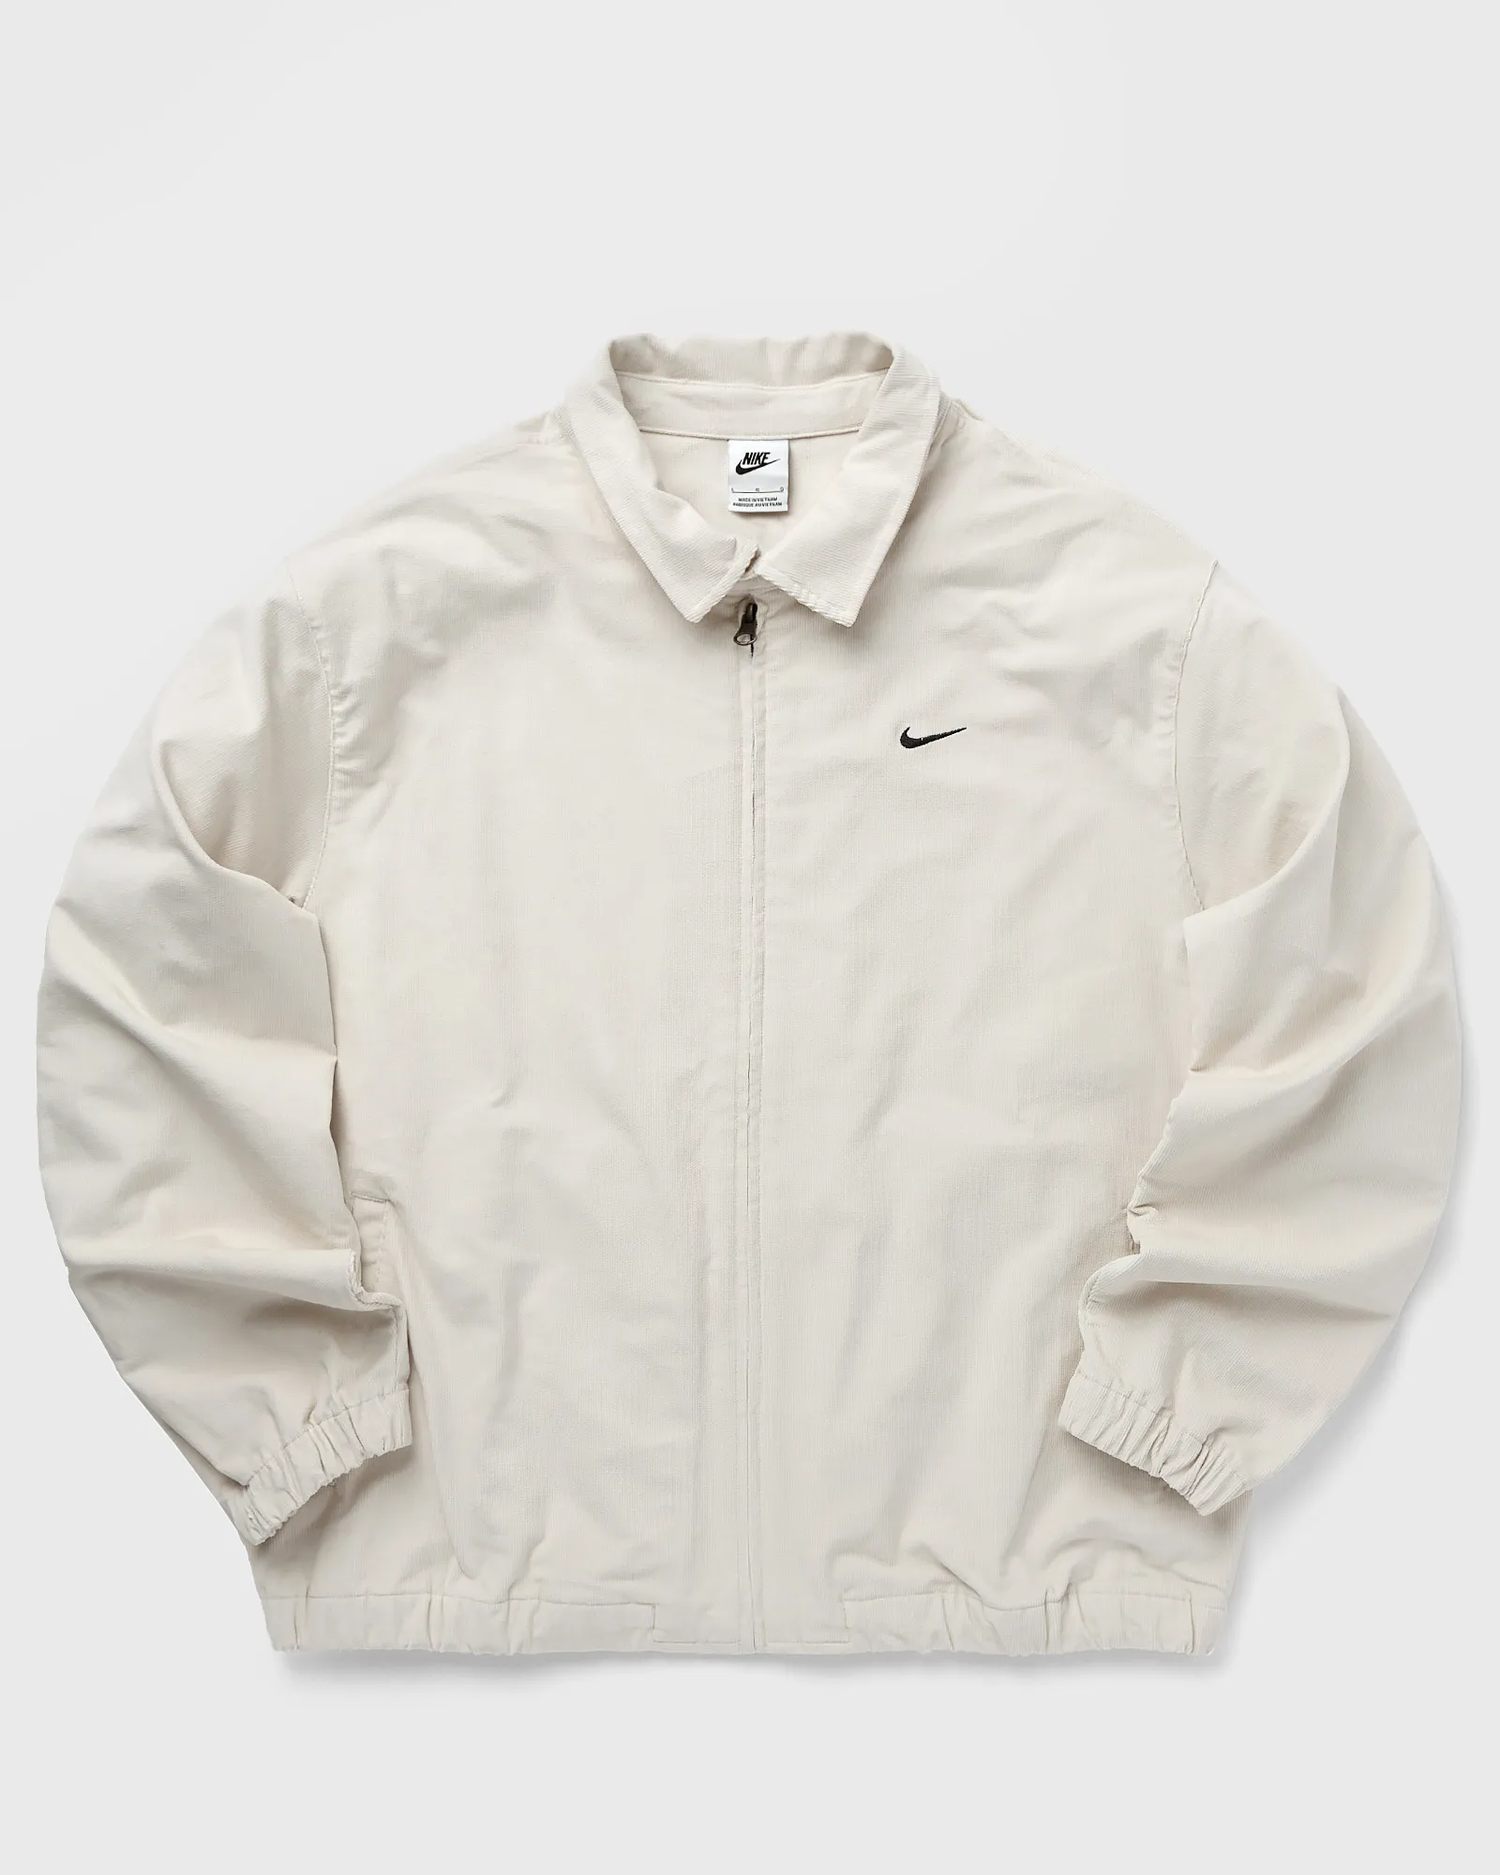 Nearly 50% OFF the Nike Life Harrington Jacket 